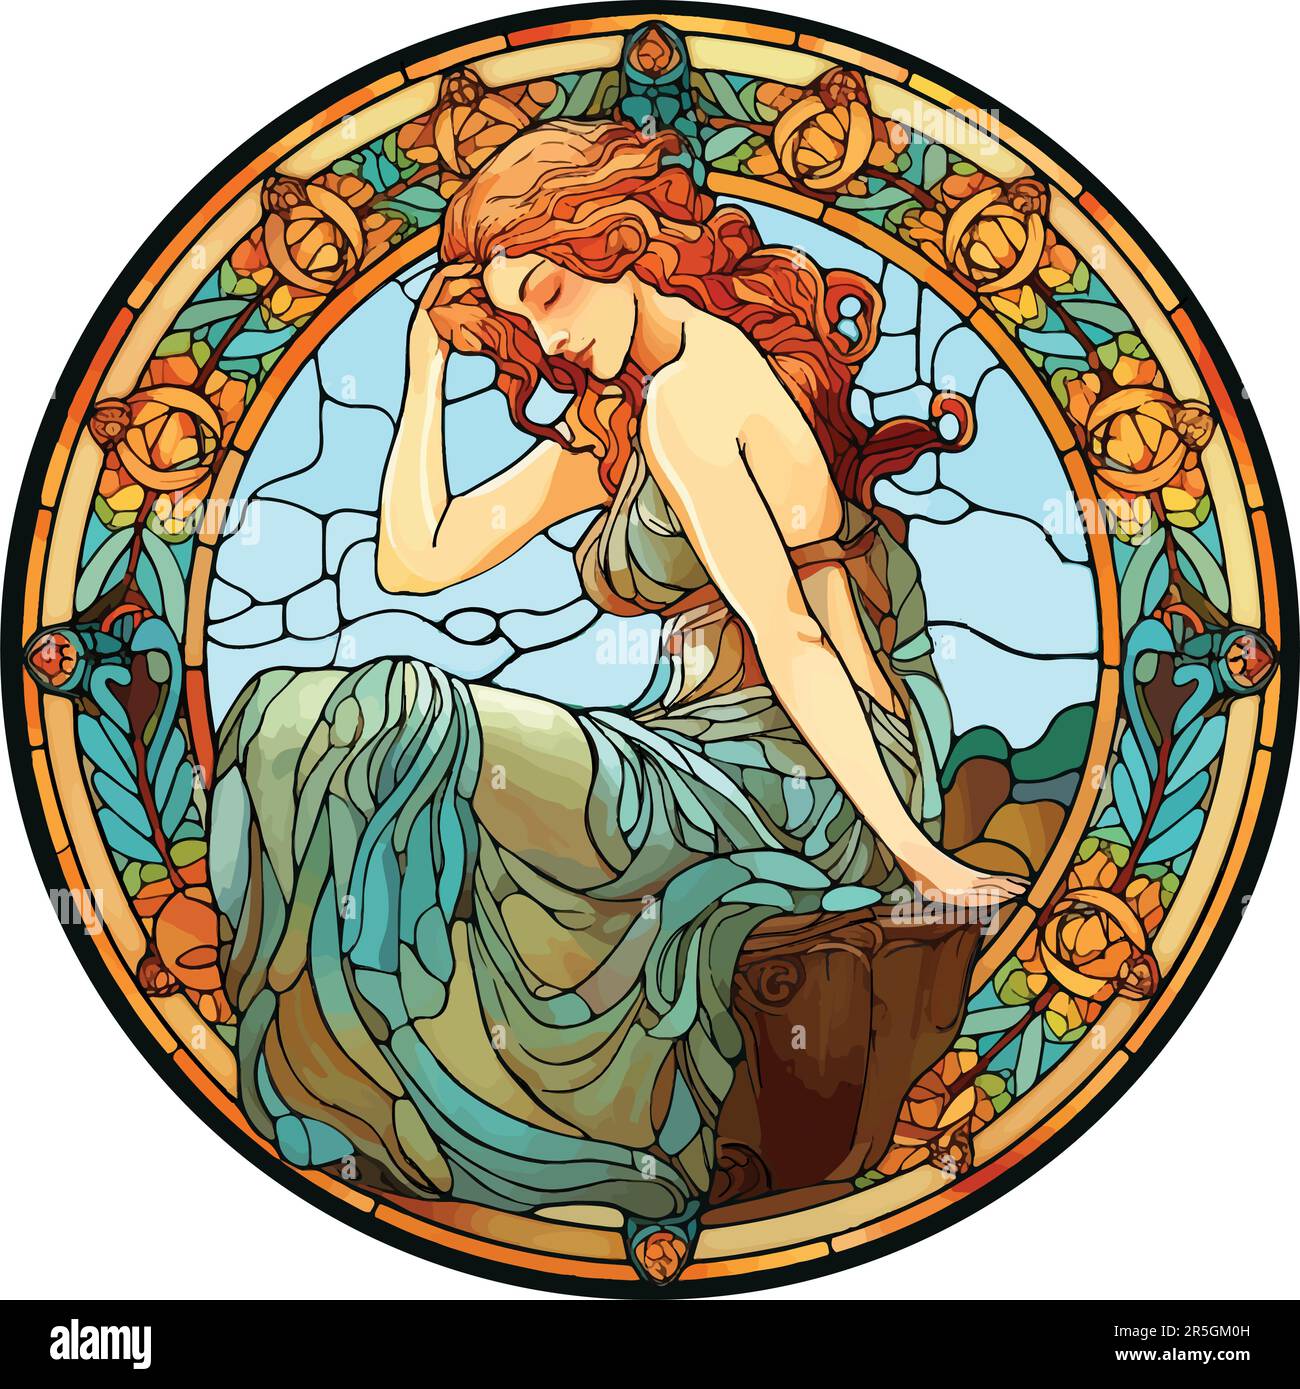 Geblümtes Buntglasmotiv einer Frau mit rotem Haar, die in einem Garten sitzt. Stock Vektor